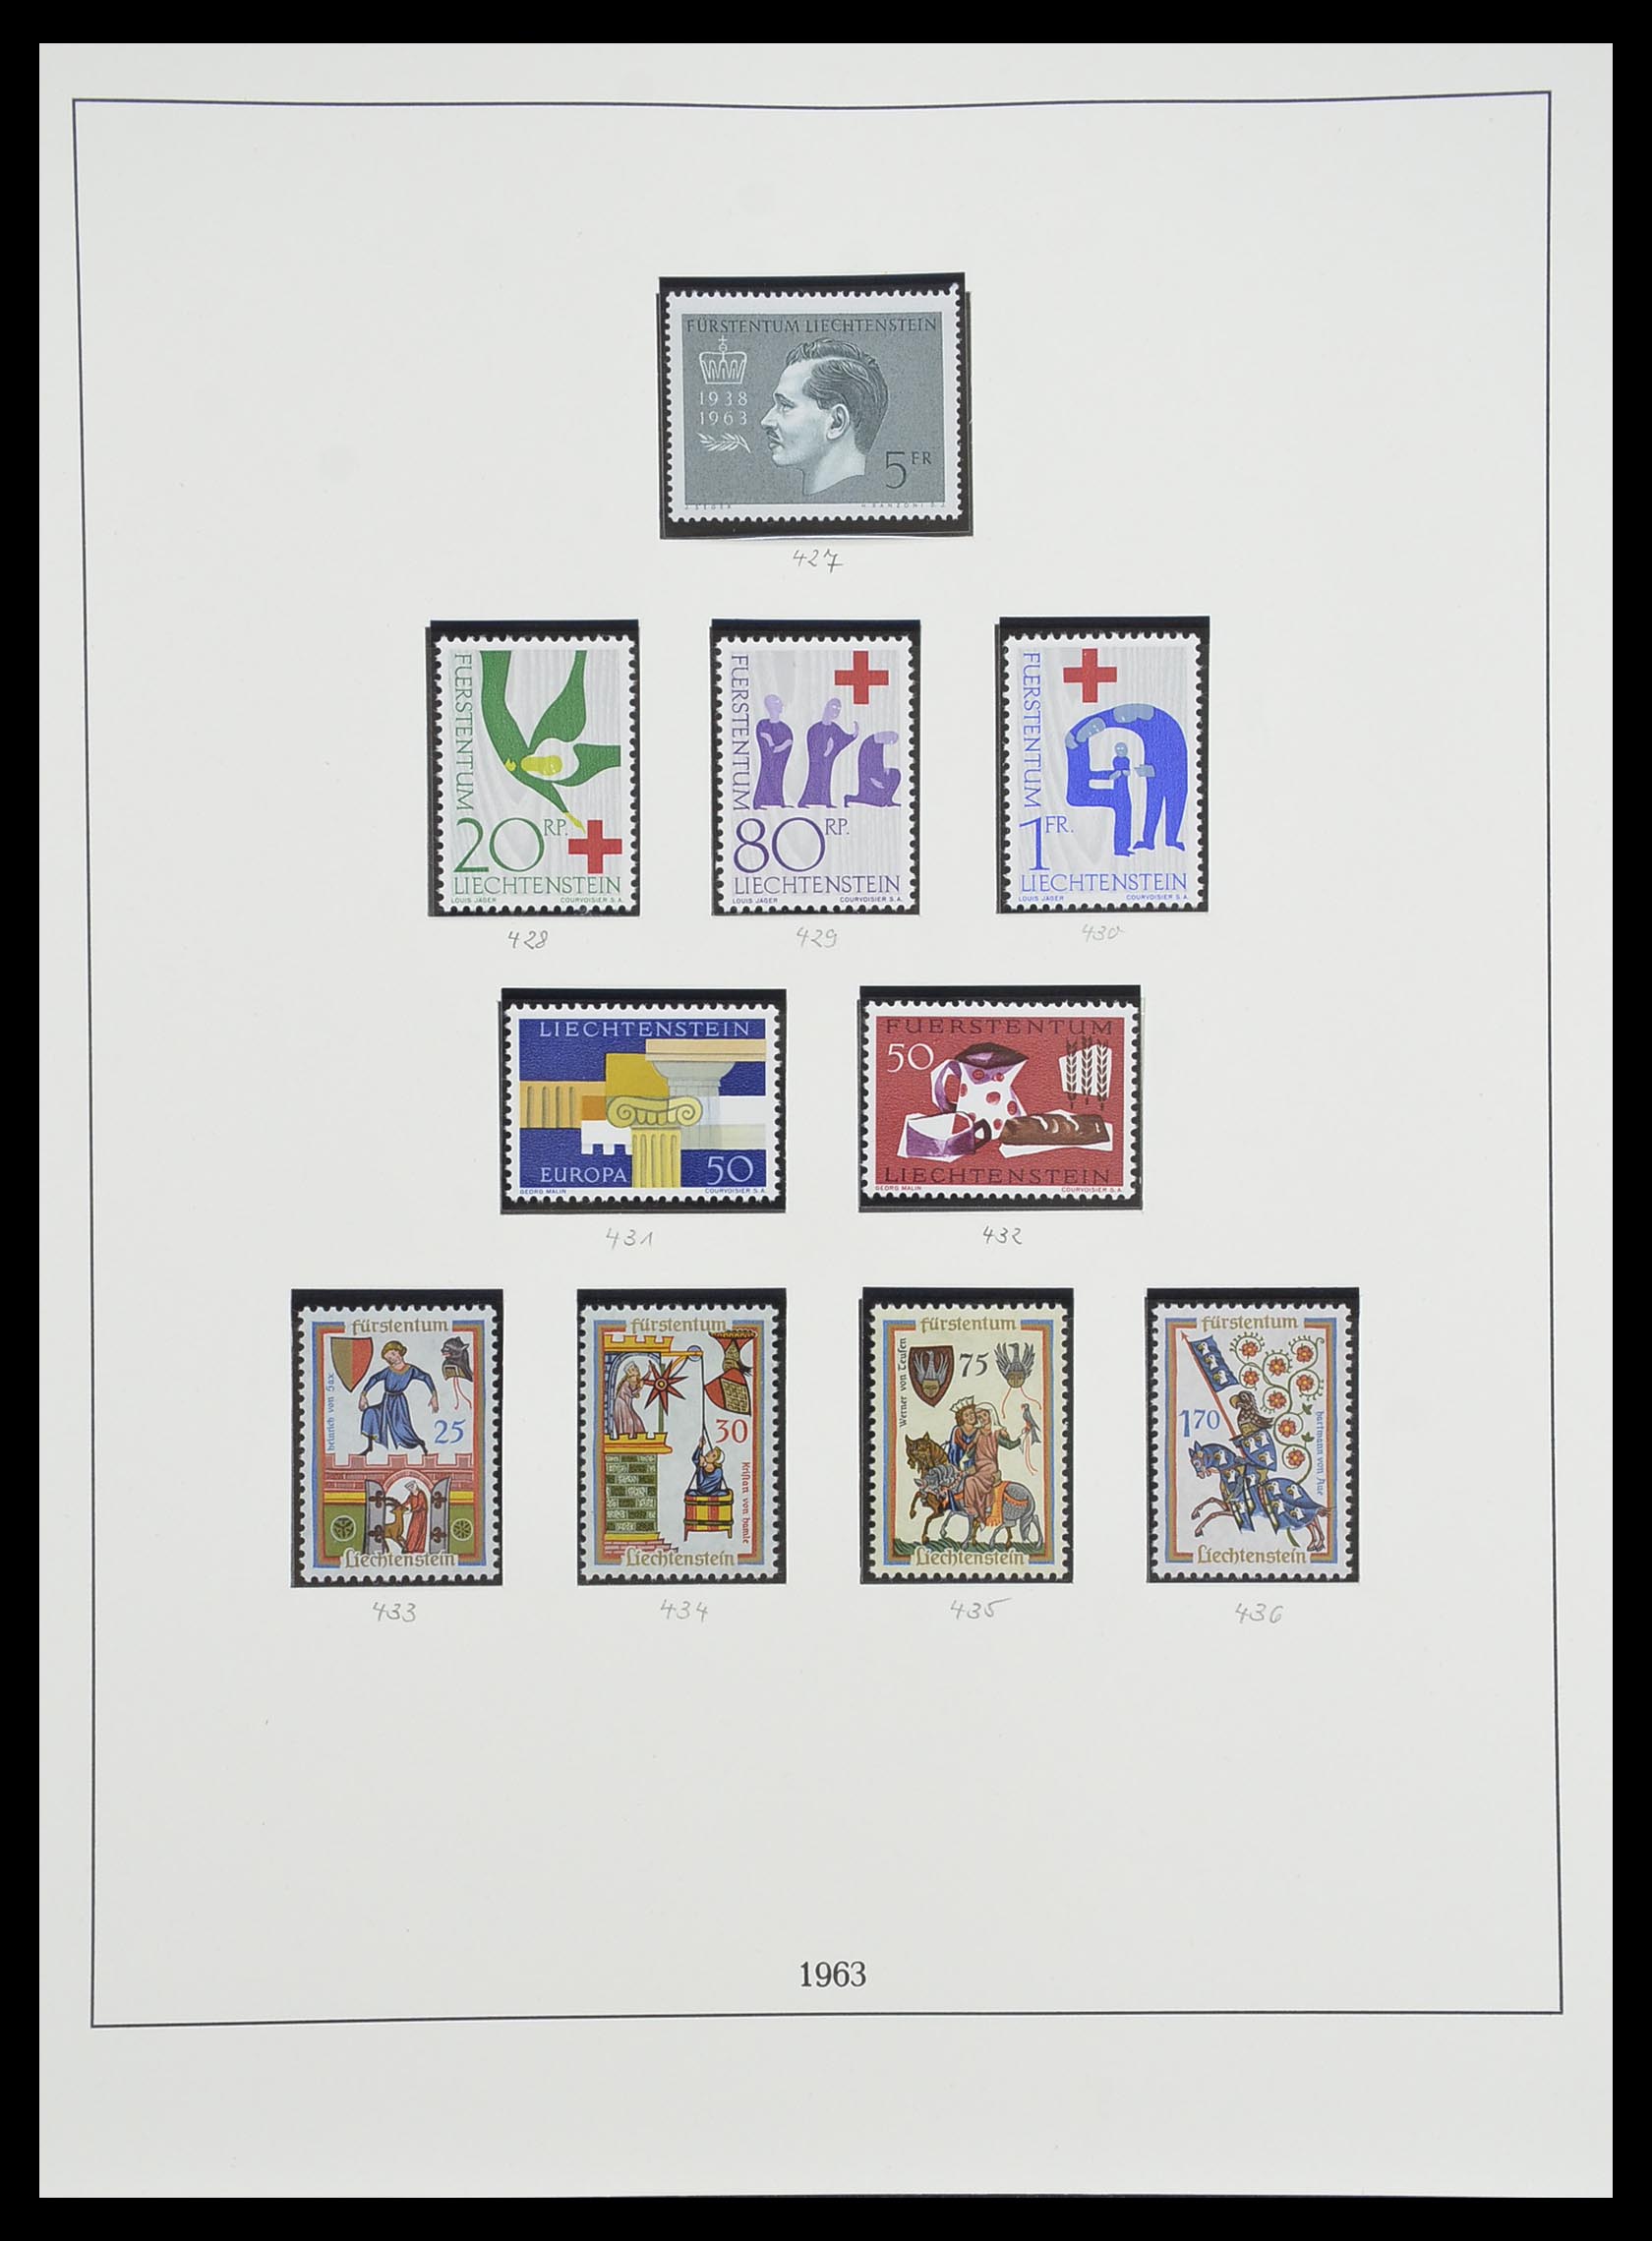 33493 062 - Stamp collection 33493 Liechtenstein 1912-2008.